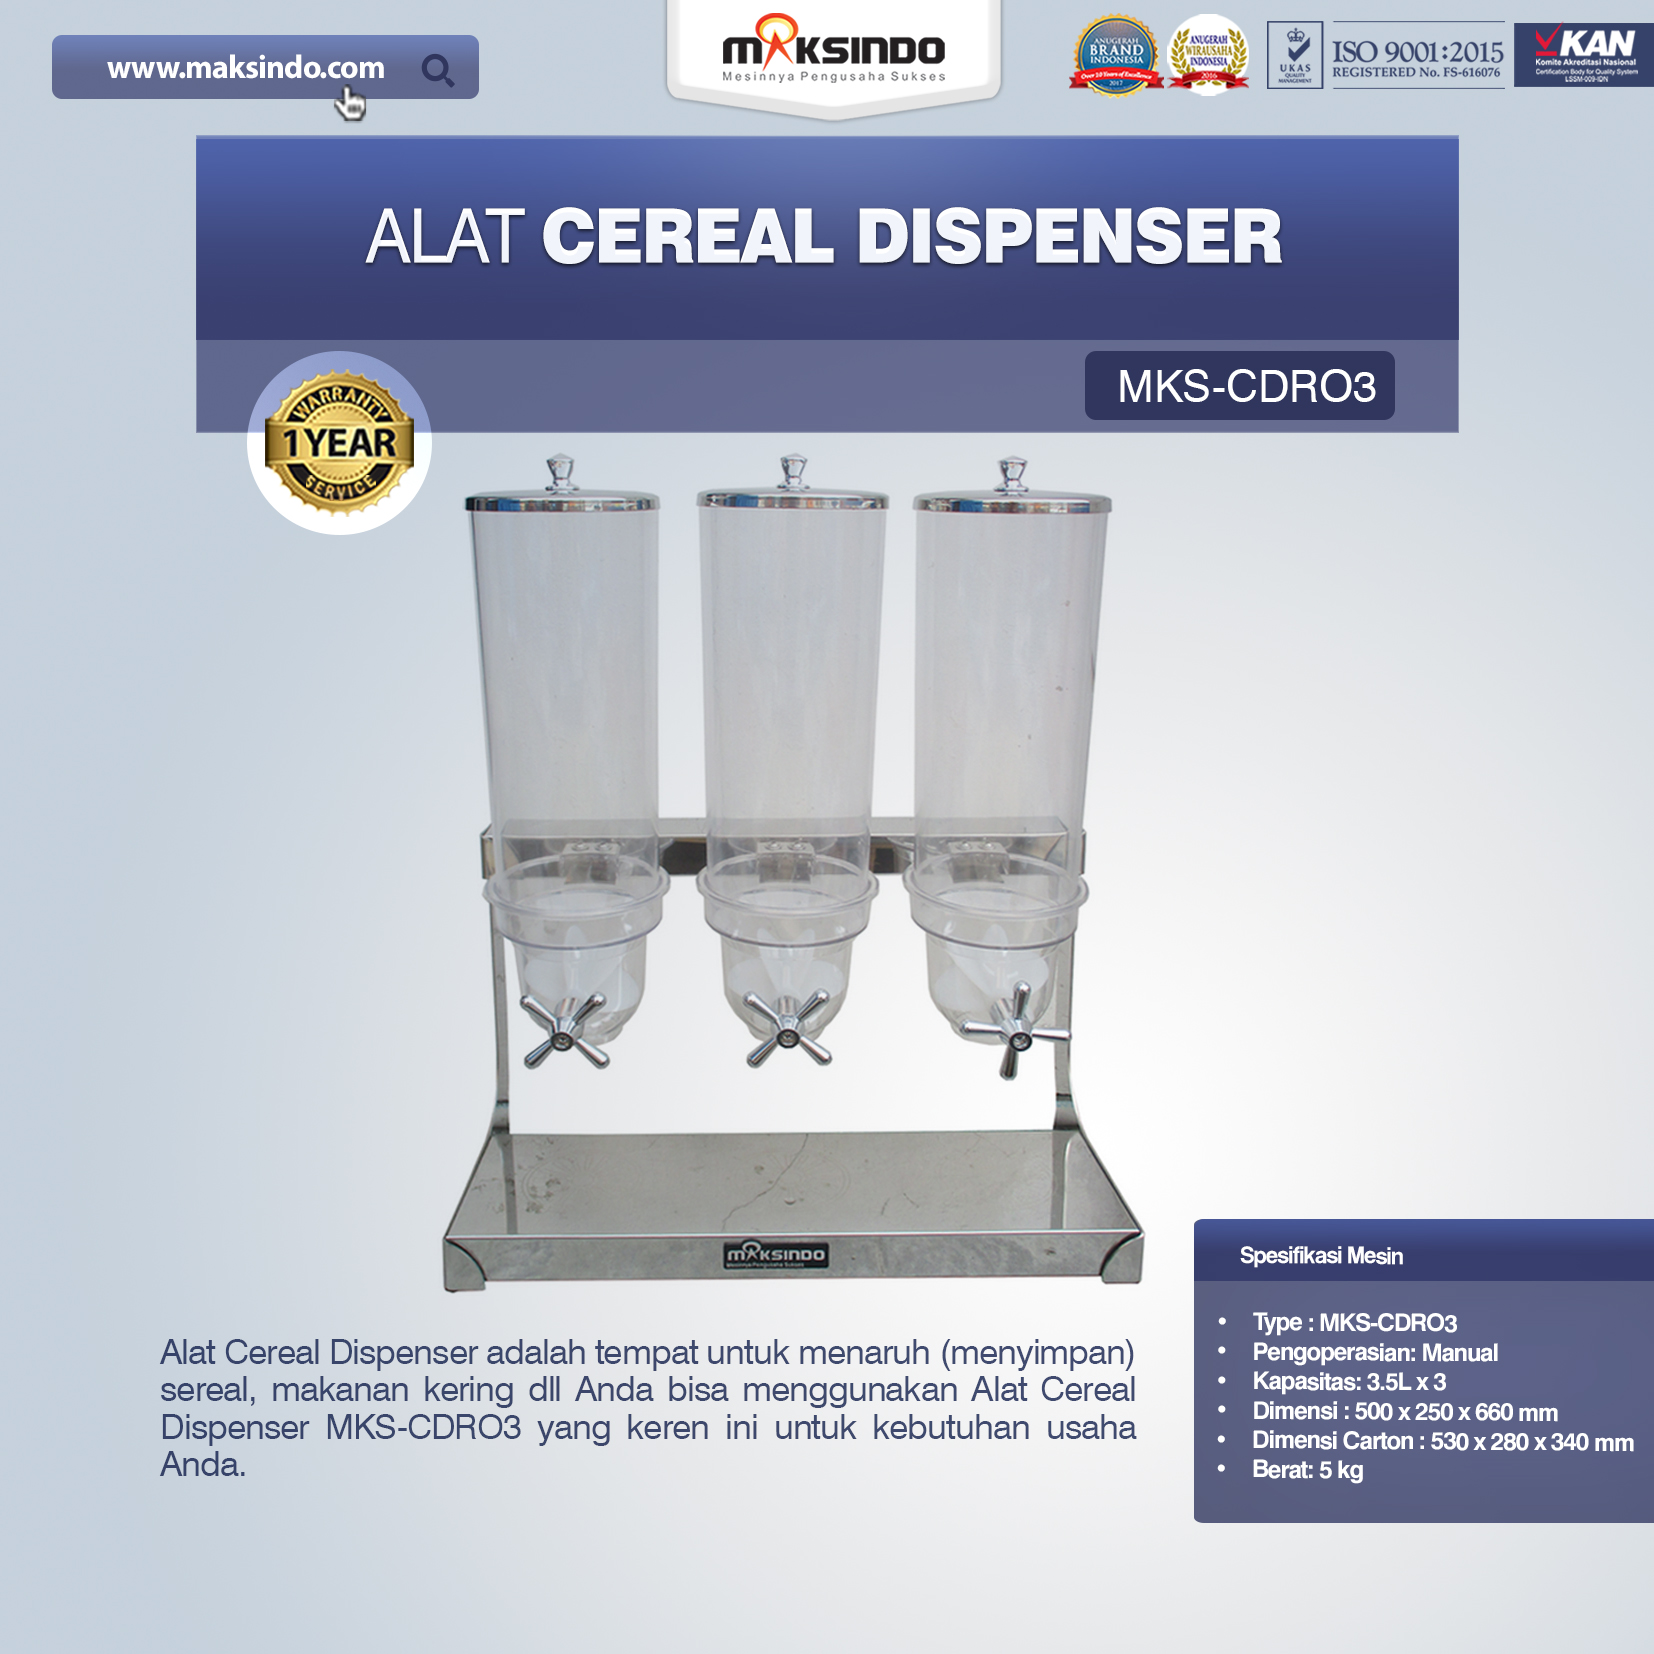 Jual Alat Cereal Dispenser MKS-CDR03 Di Pekanbaru